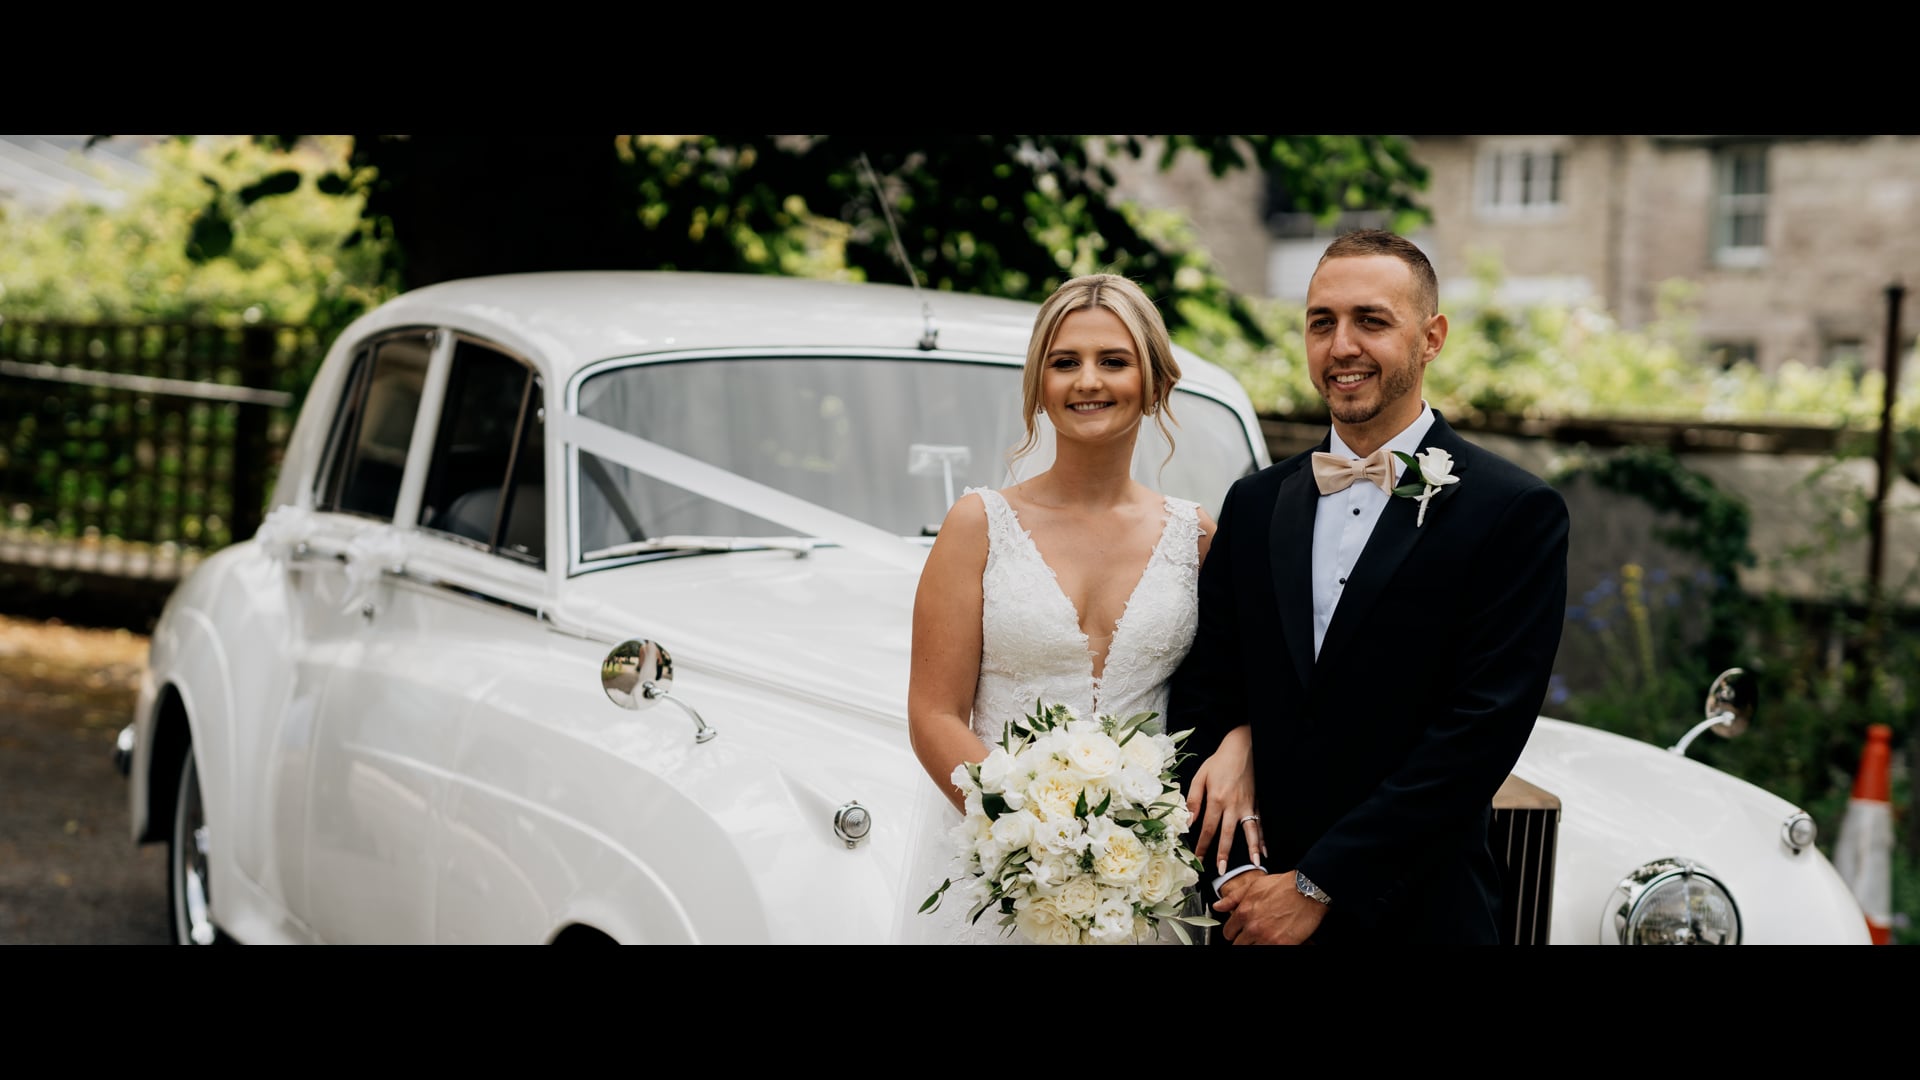 Alex & Leah Wedding Video Filmed atDorset,England